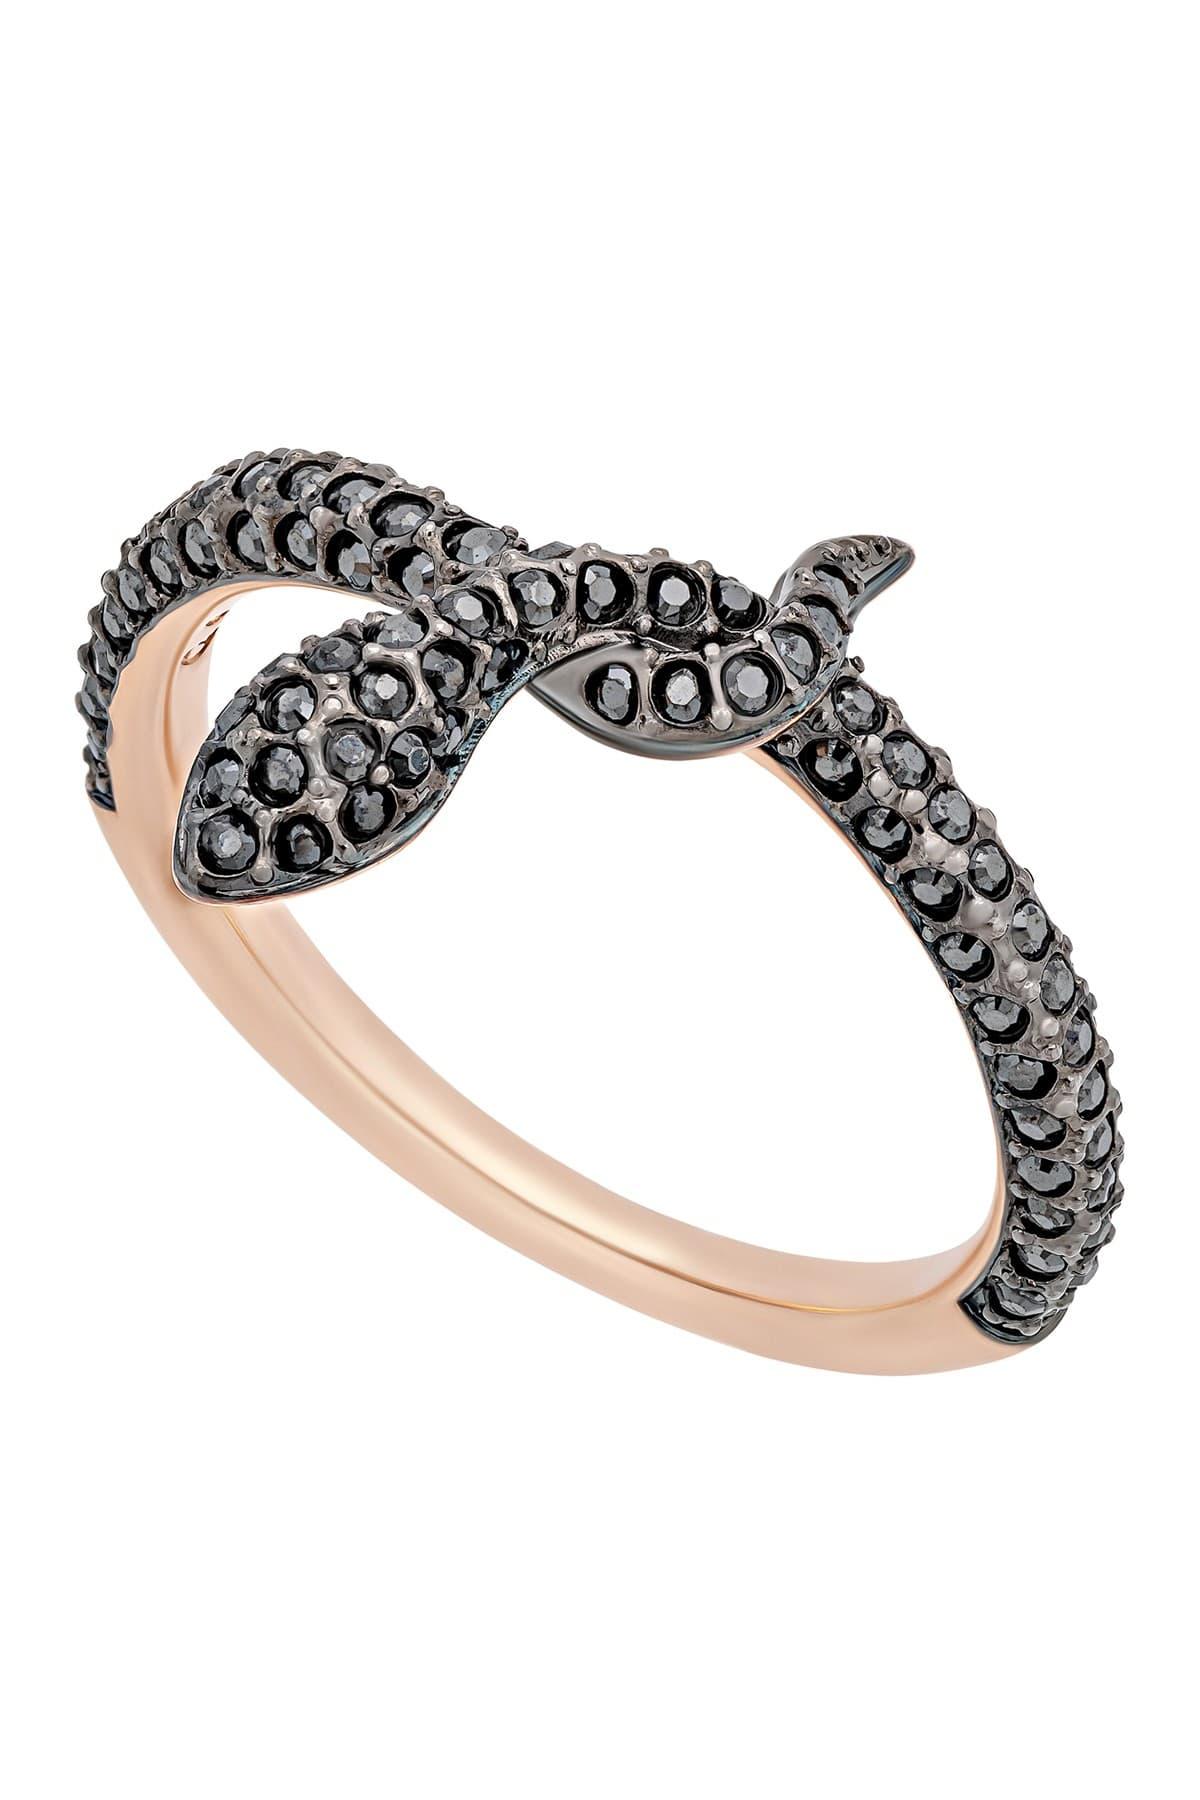 Swarovski Leslie 18k Rose Gold Plated Black Crystal Snake Ring - Size 8 |  Lyst